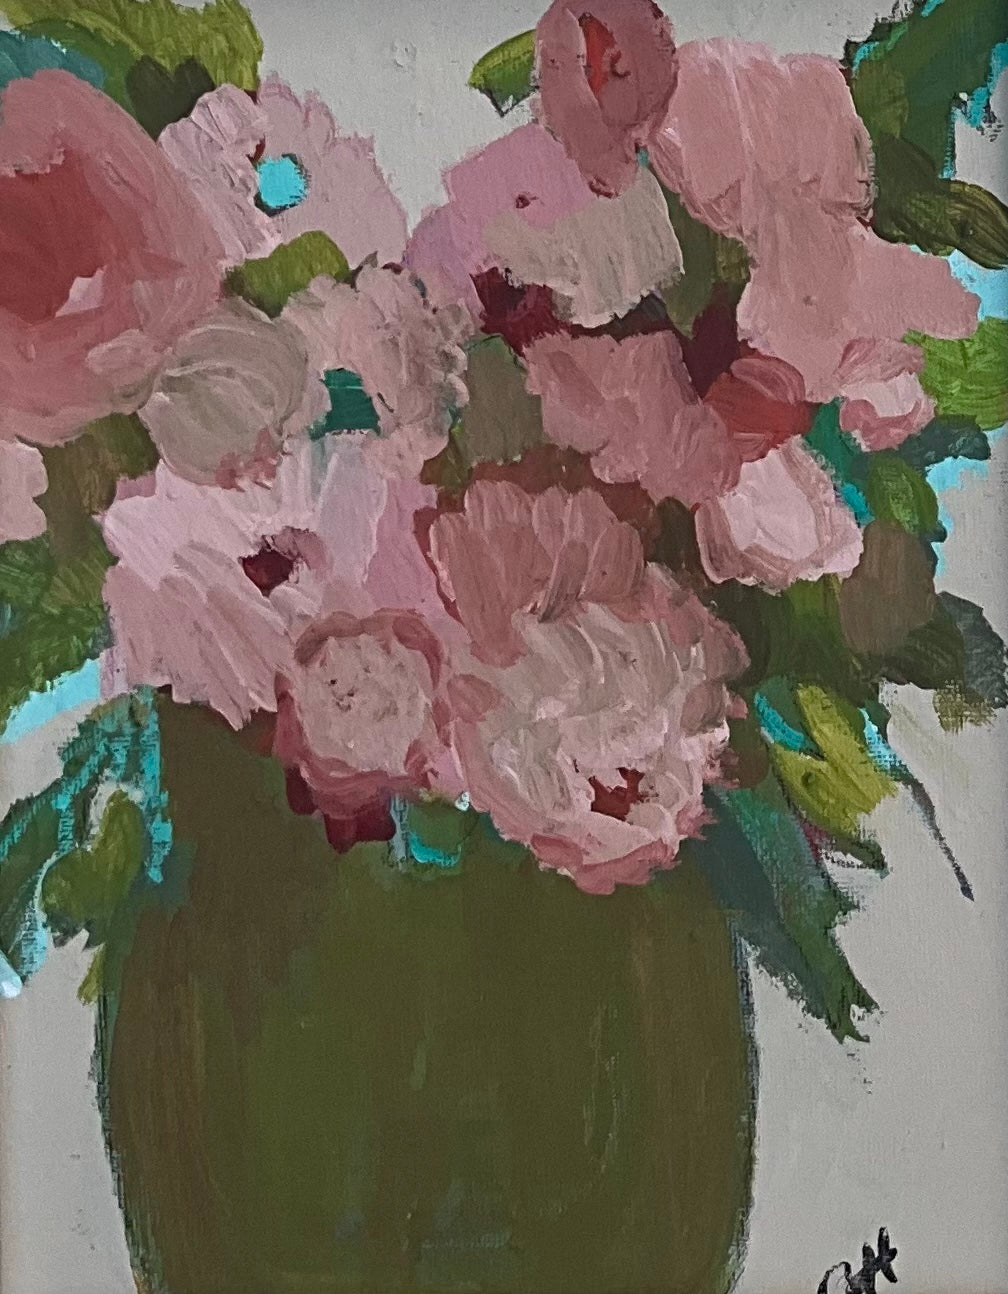 The Holly, Acrylic on Canvas, 9x12